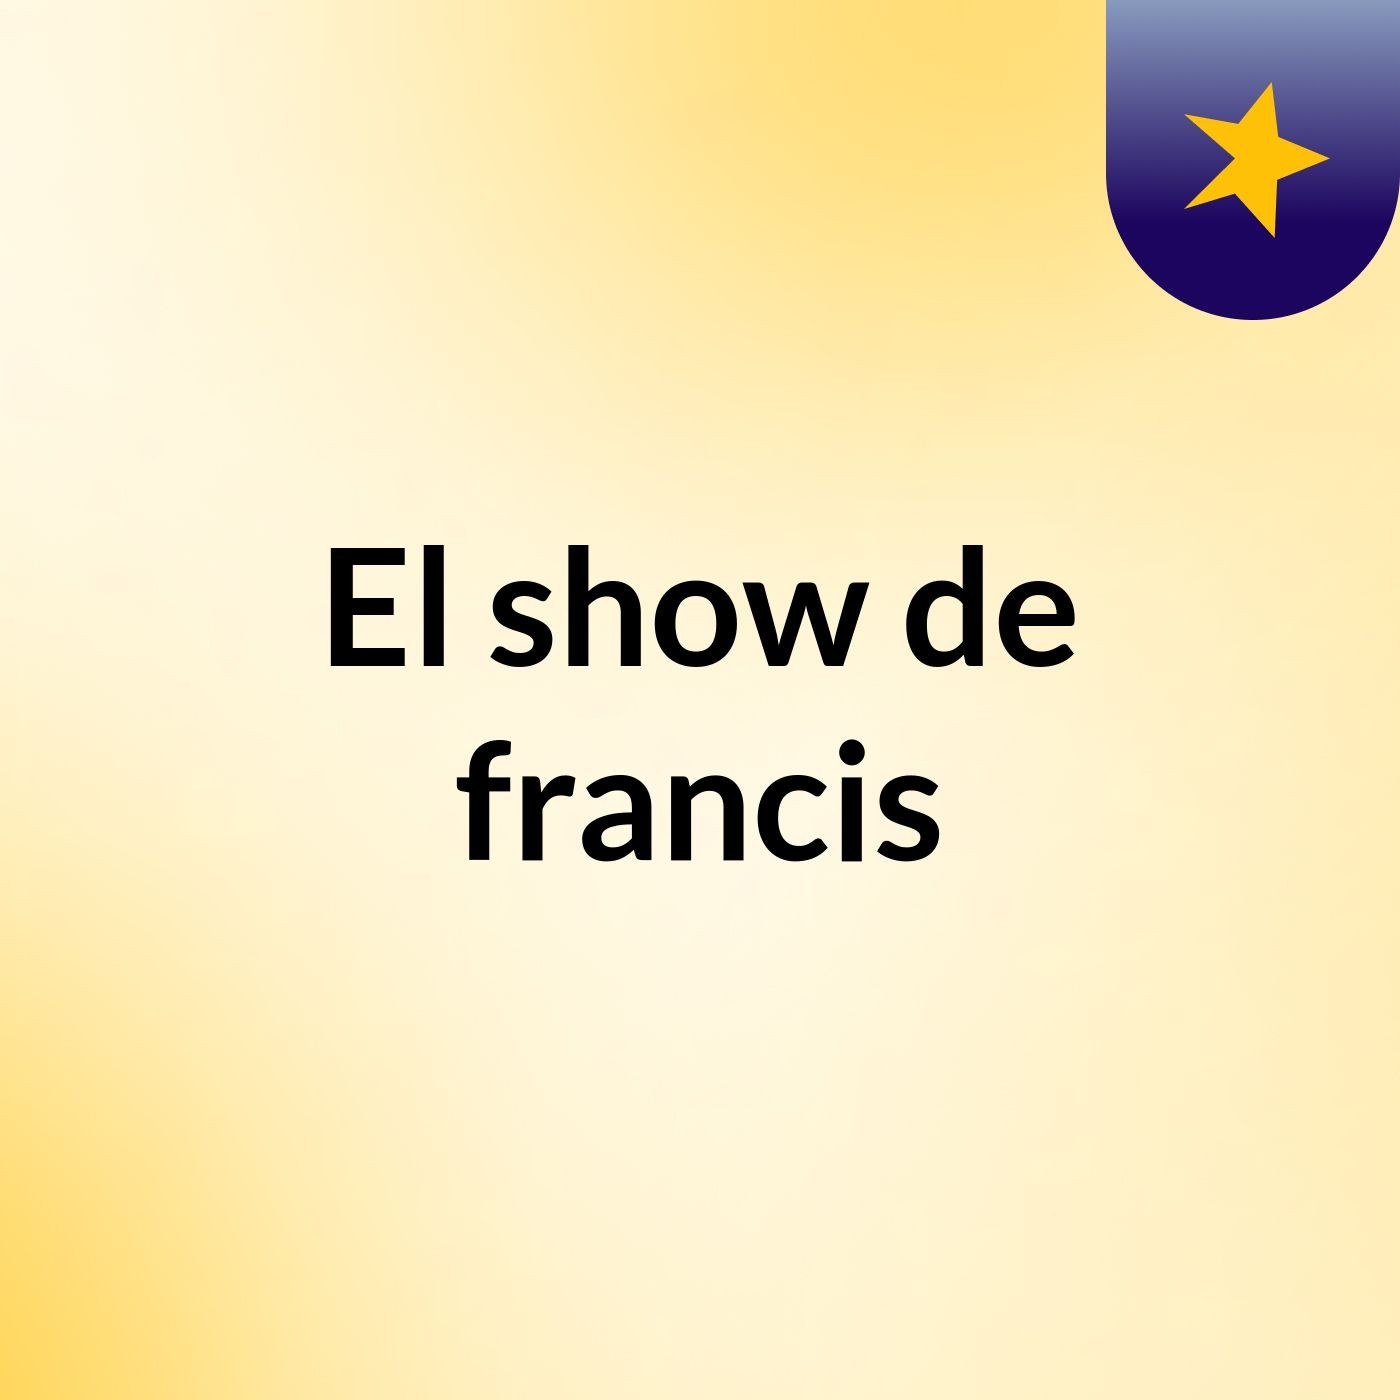 El show de francis